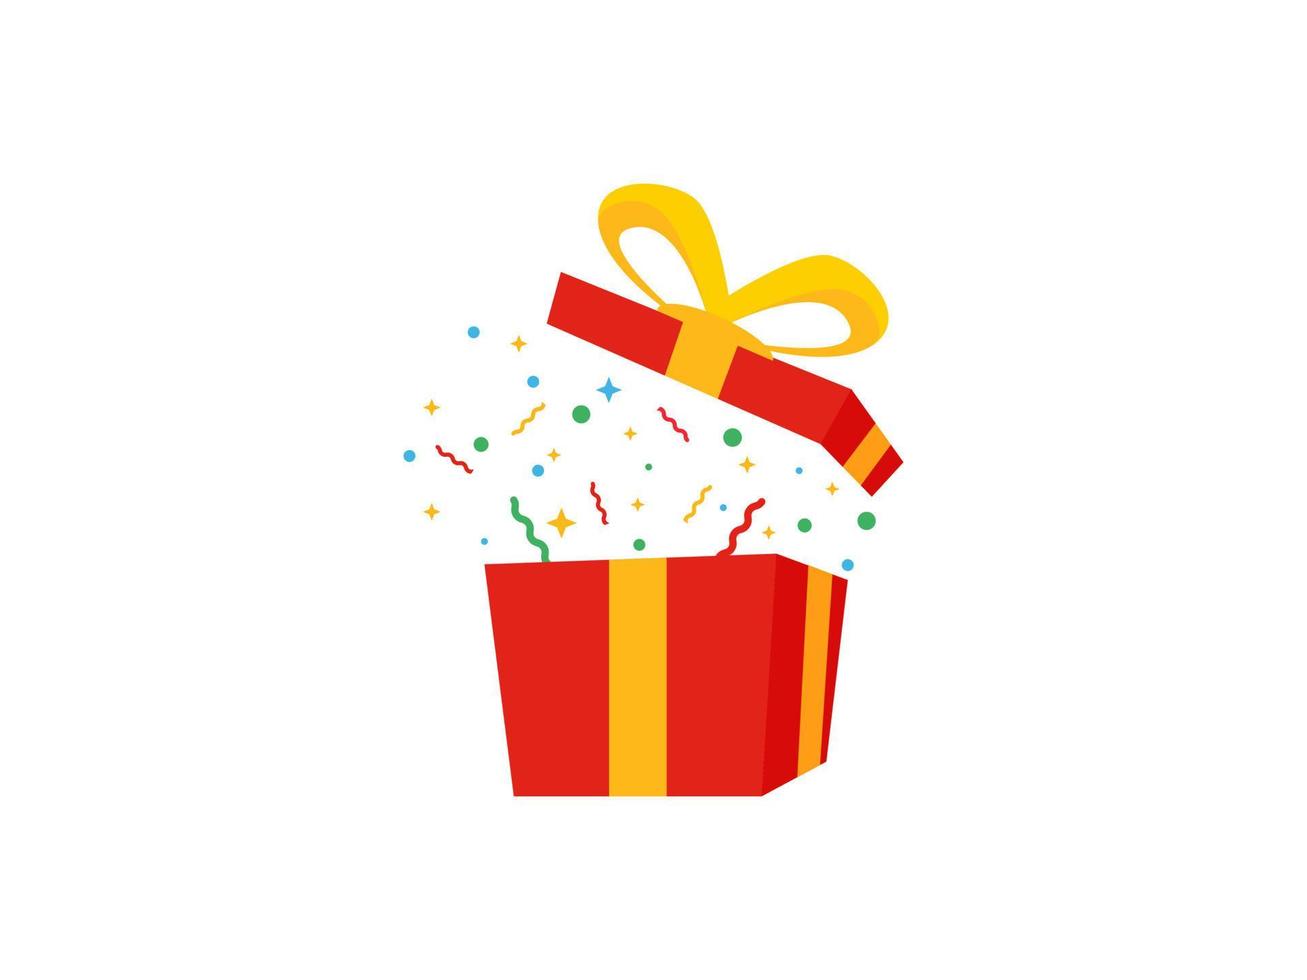 verrassing rood geschenk doos, verjaardag viering, speciaal geven weg pakket, loyaliteit programma beloning, vector icoon illustratie